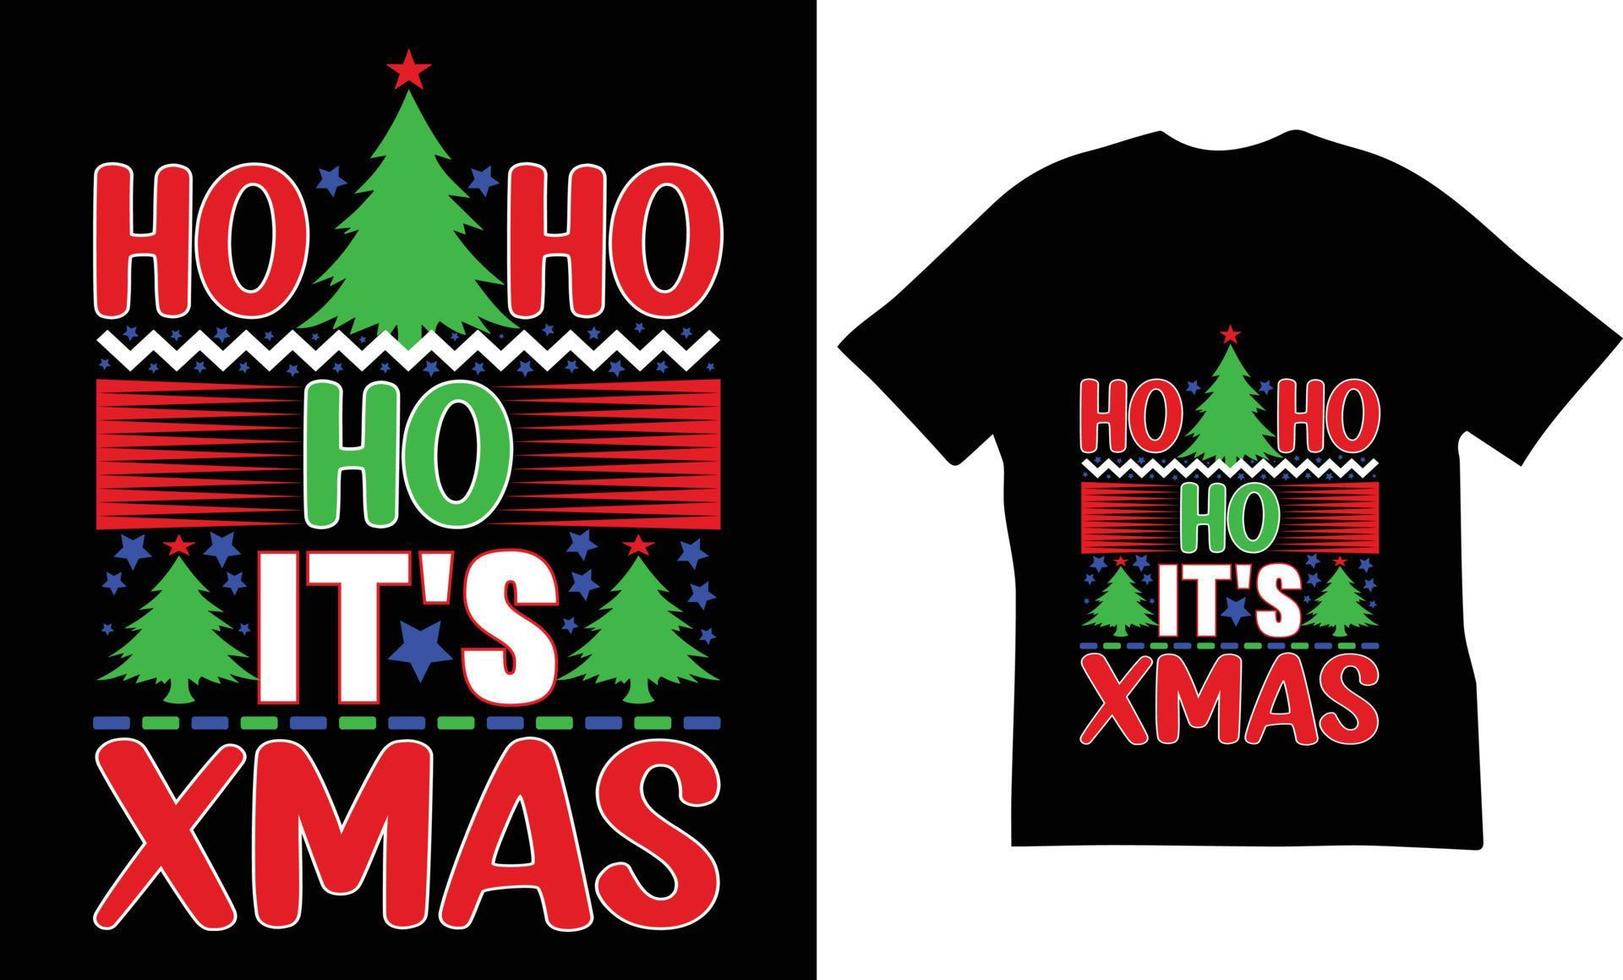 ho ho ho zijn Kerstmis citaten t-shirt ontwerp. de het beste Kerstmis citaten t-shirt ontwerp. vector